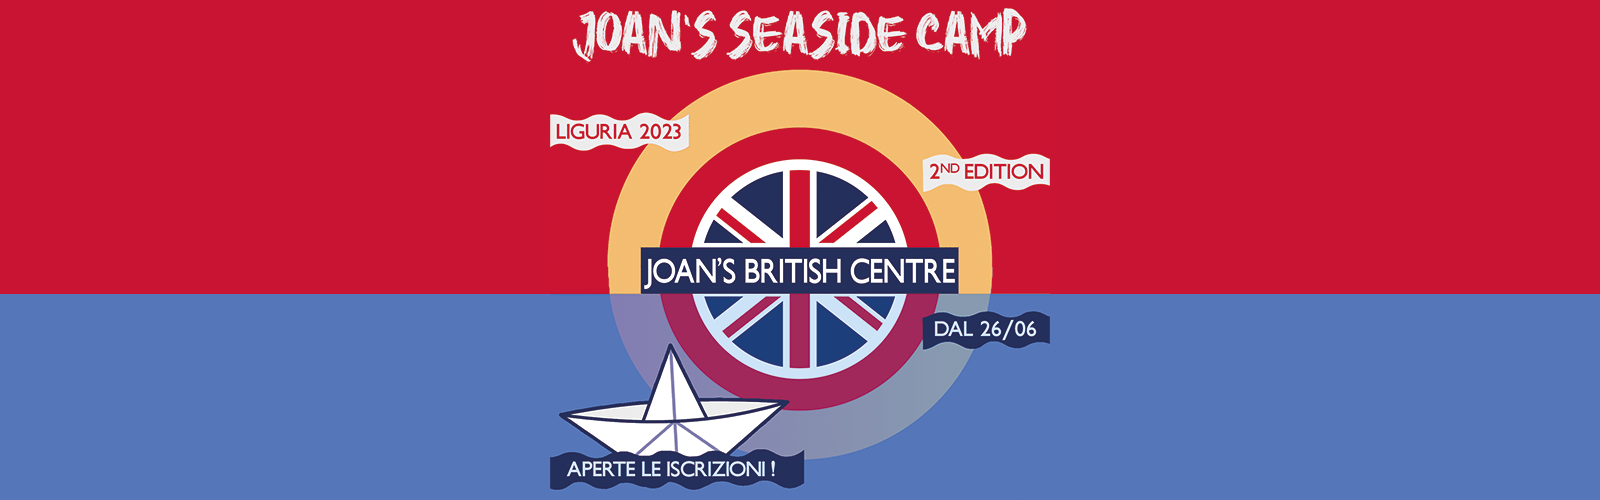 Joan's Seaside Camp 2023